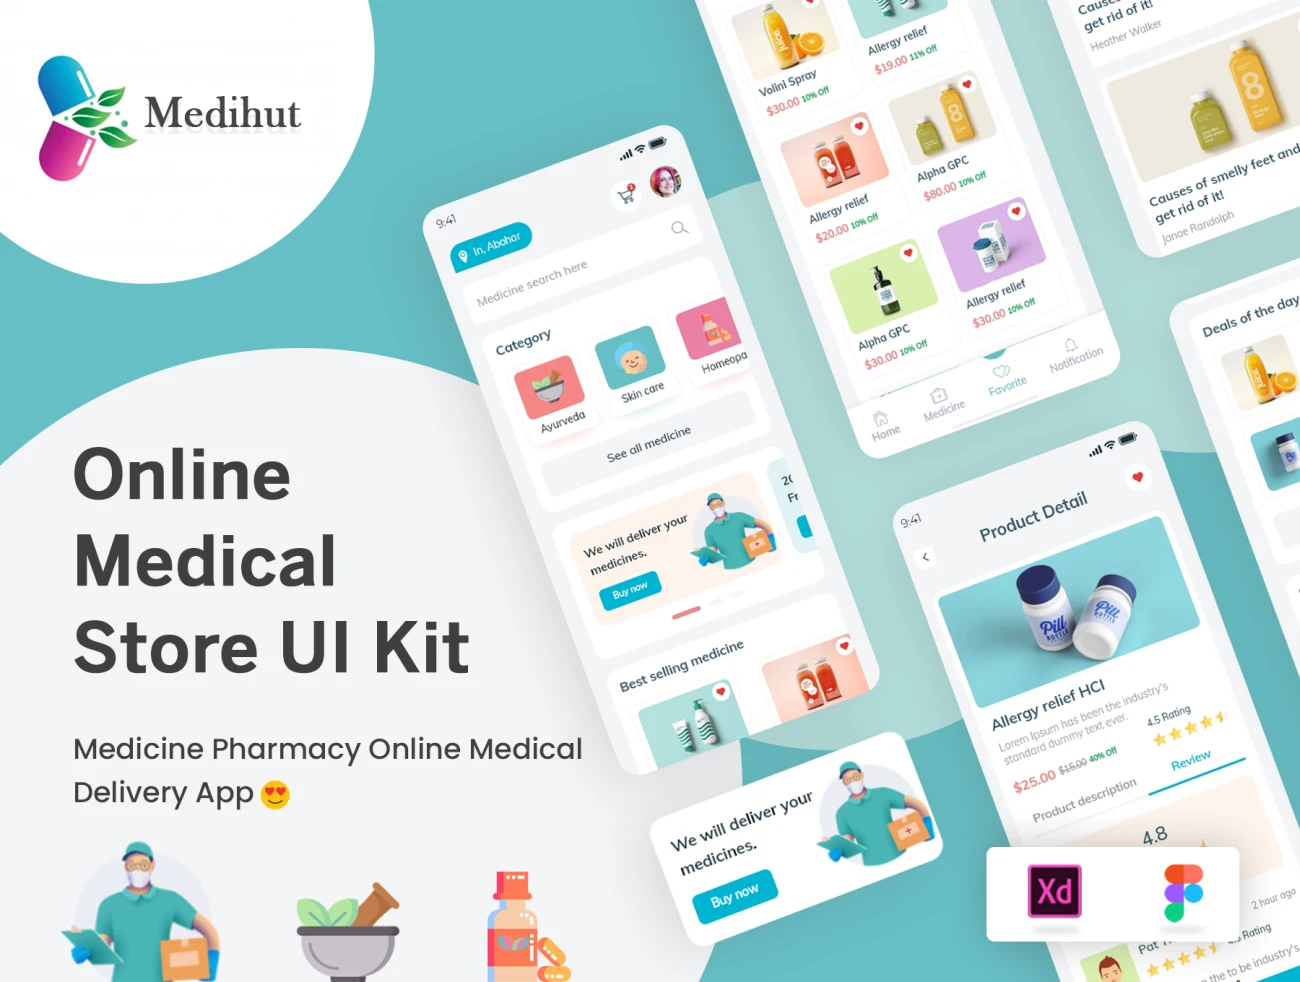 Medihut - Get Your Medicine Delivered 在线药店药物应用配送应用设计套件-UI/UX-到位啦UI